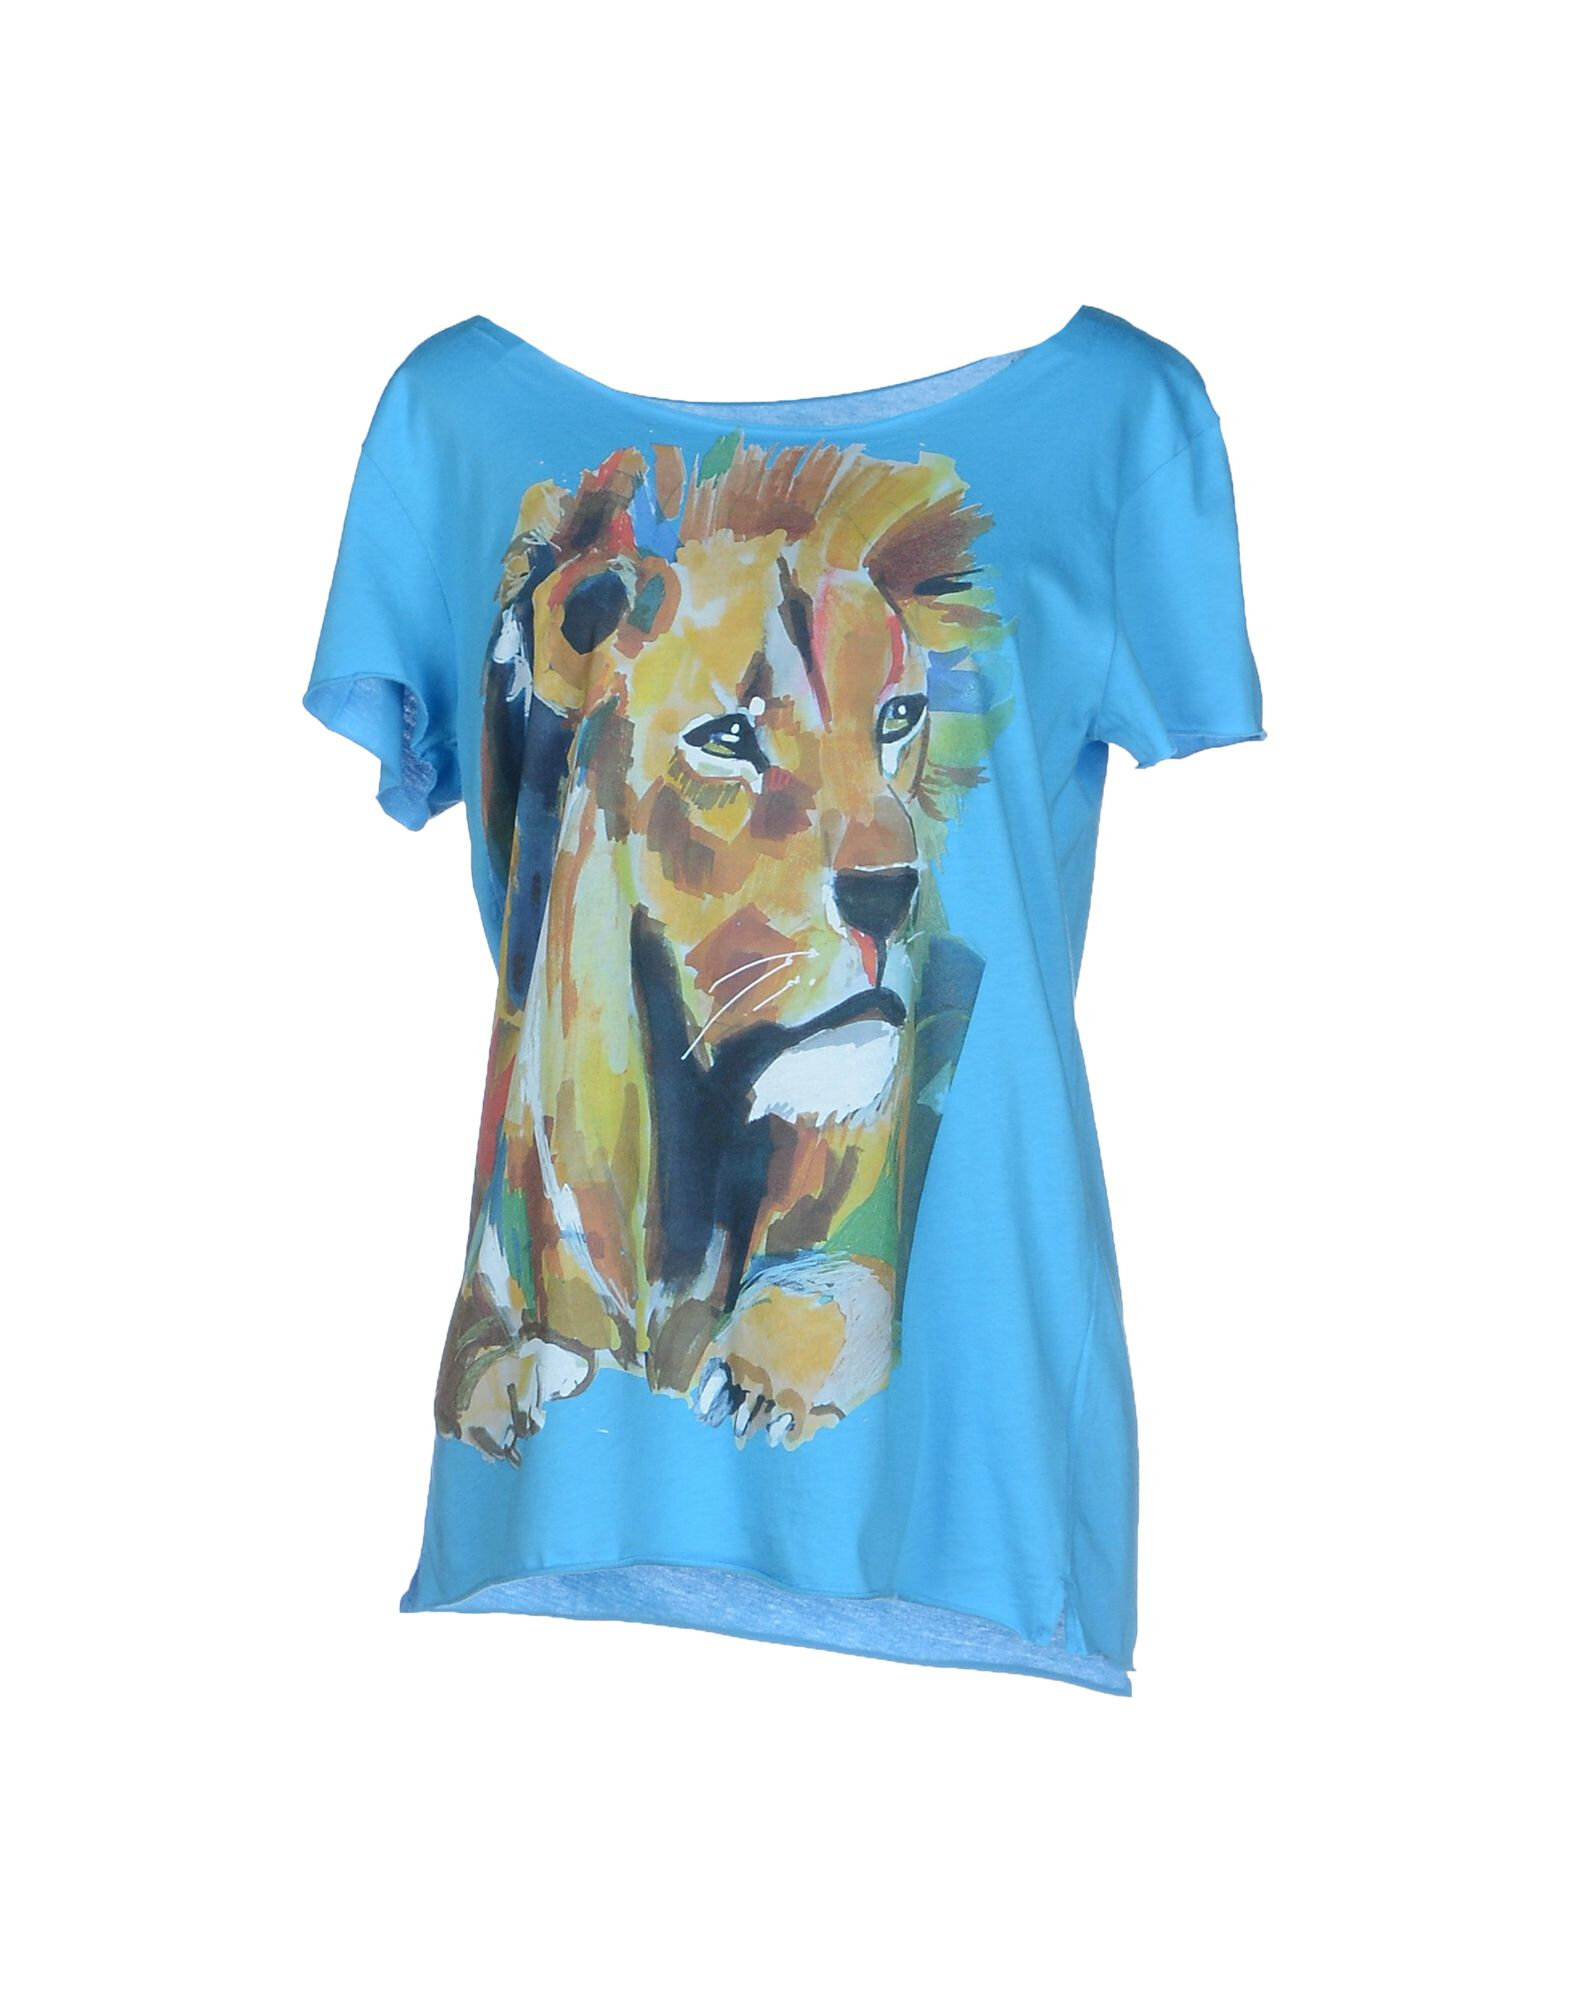 G.Kero Lion Print T-Shirt in Azure.jpg